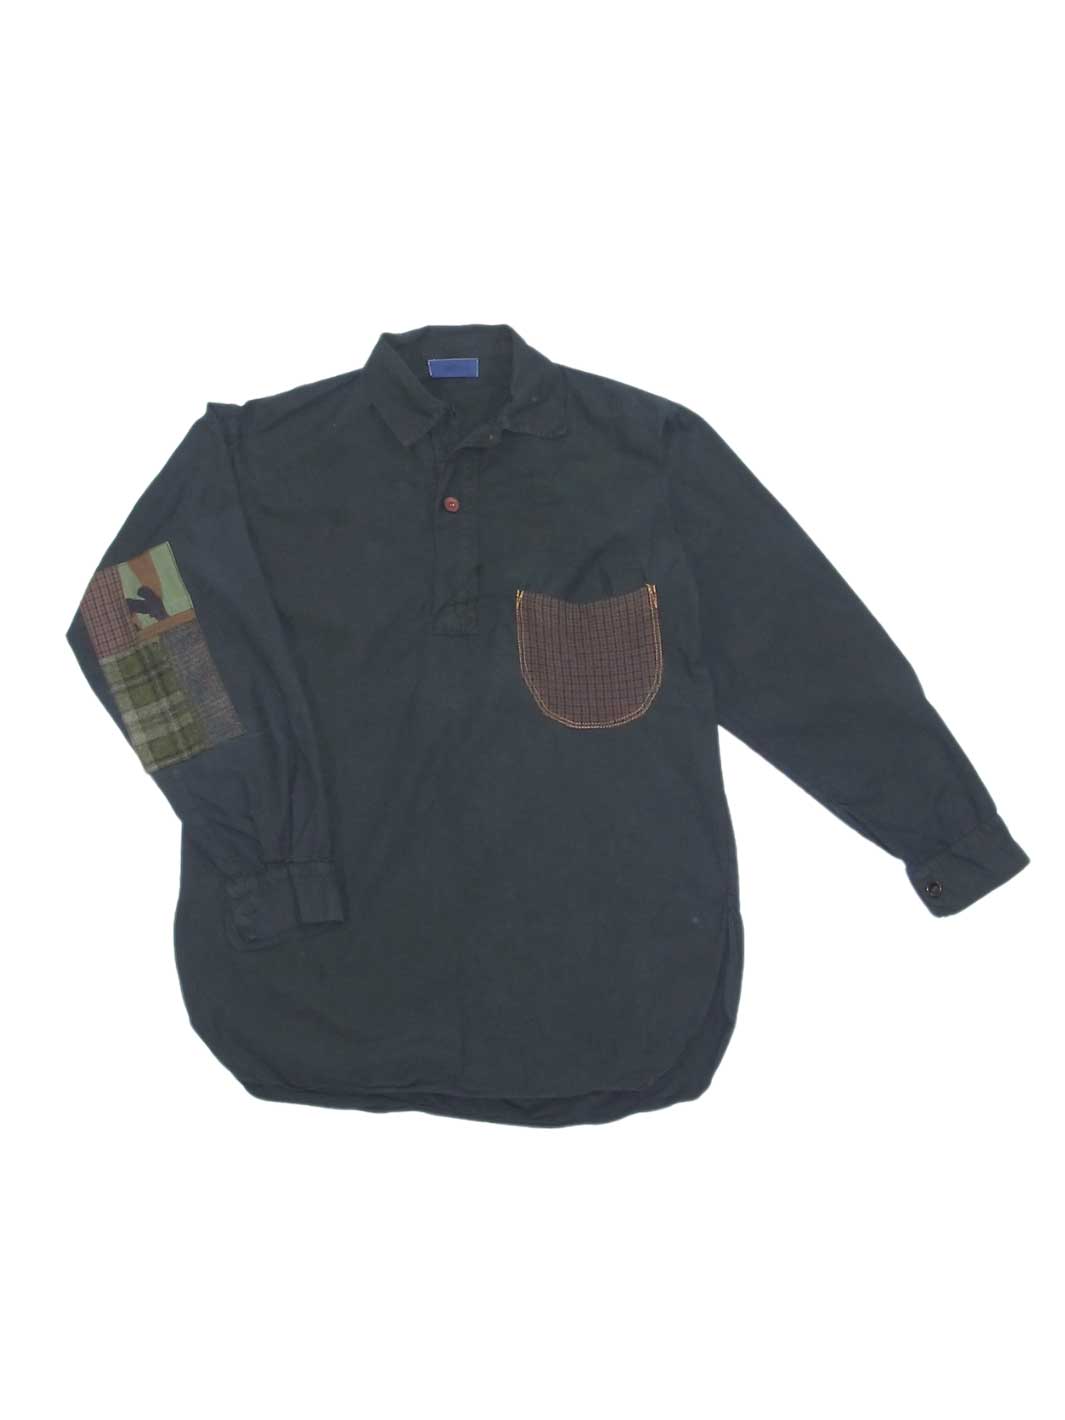 Unisex Vintage Schlupf Hemd anthrazit Größe L mit aufgesetzter Brusttasche aus einem kleinen Karo Patchwork Ellbogen Patches grün kariert und Camouflage Muster gemixt 100% Baumwolle